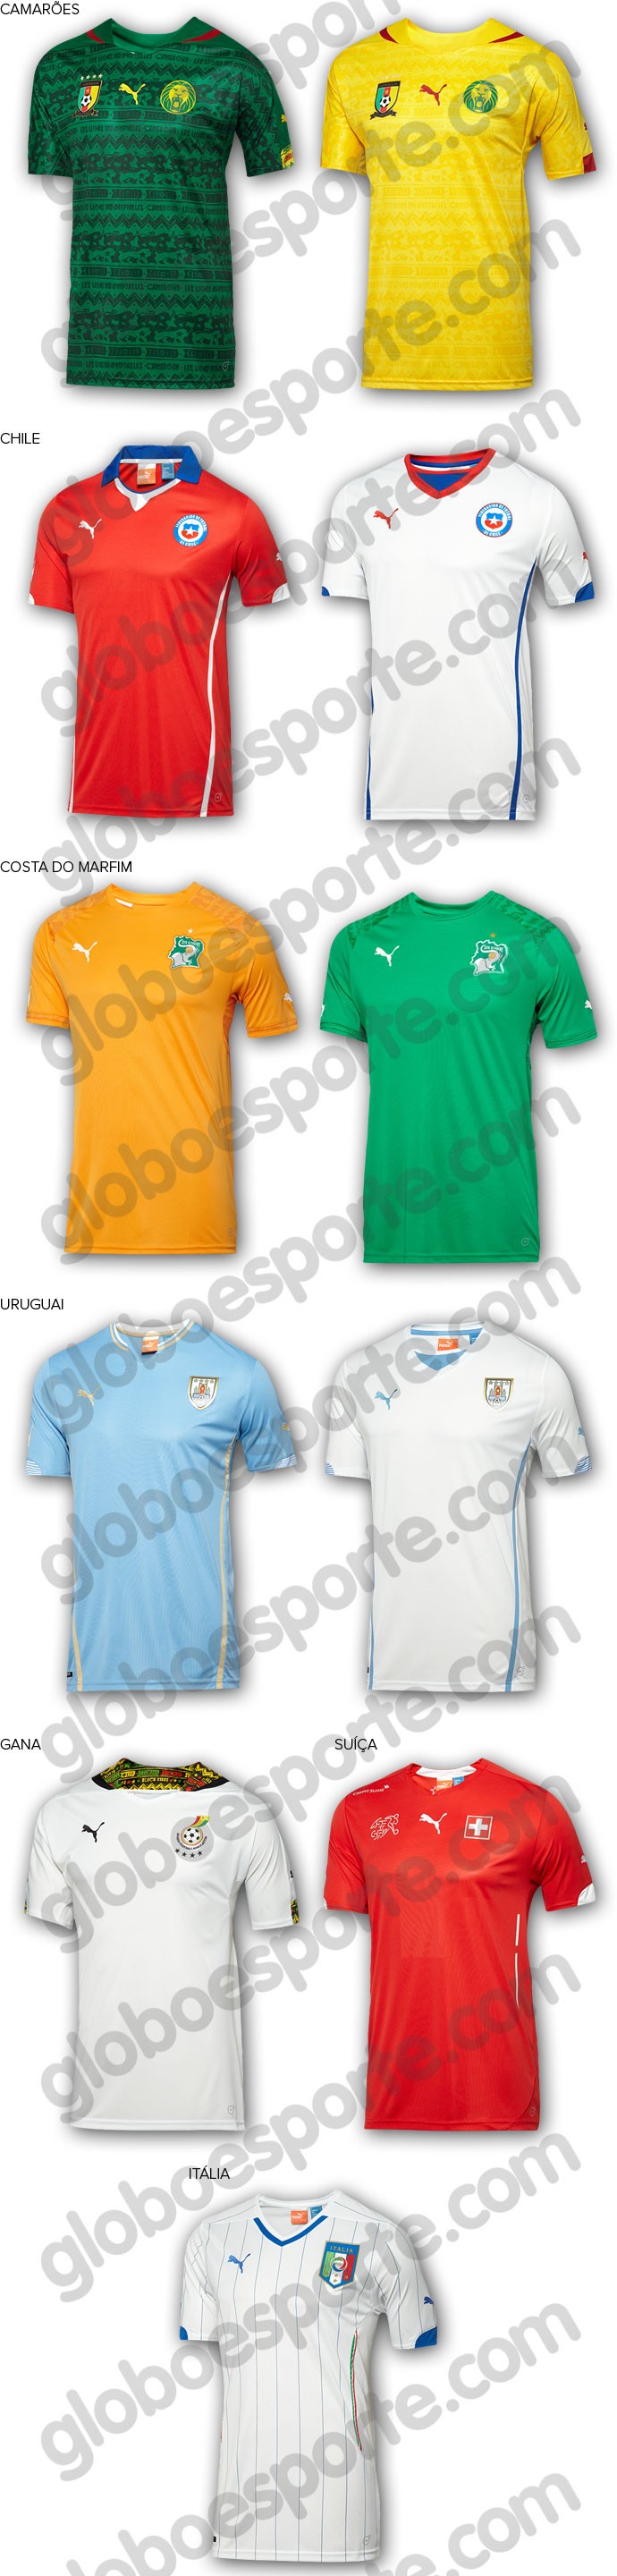 camisas da Copa seleções